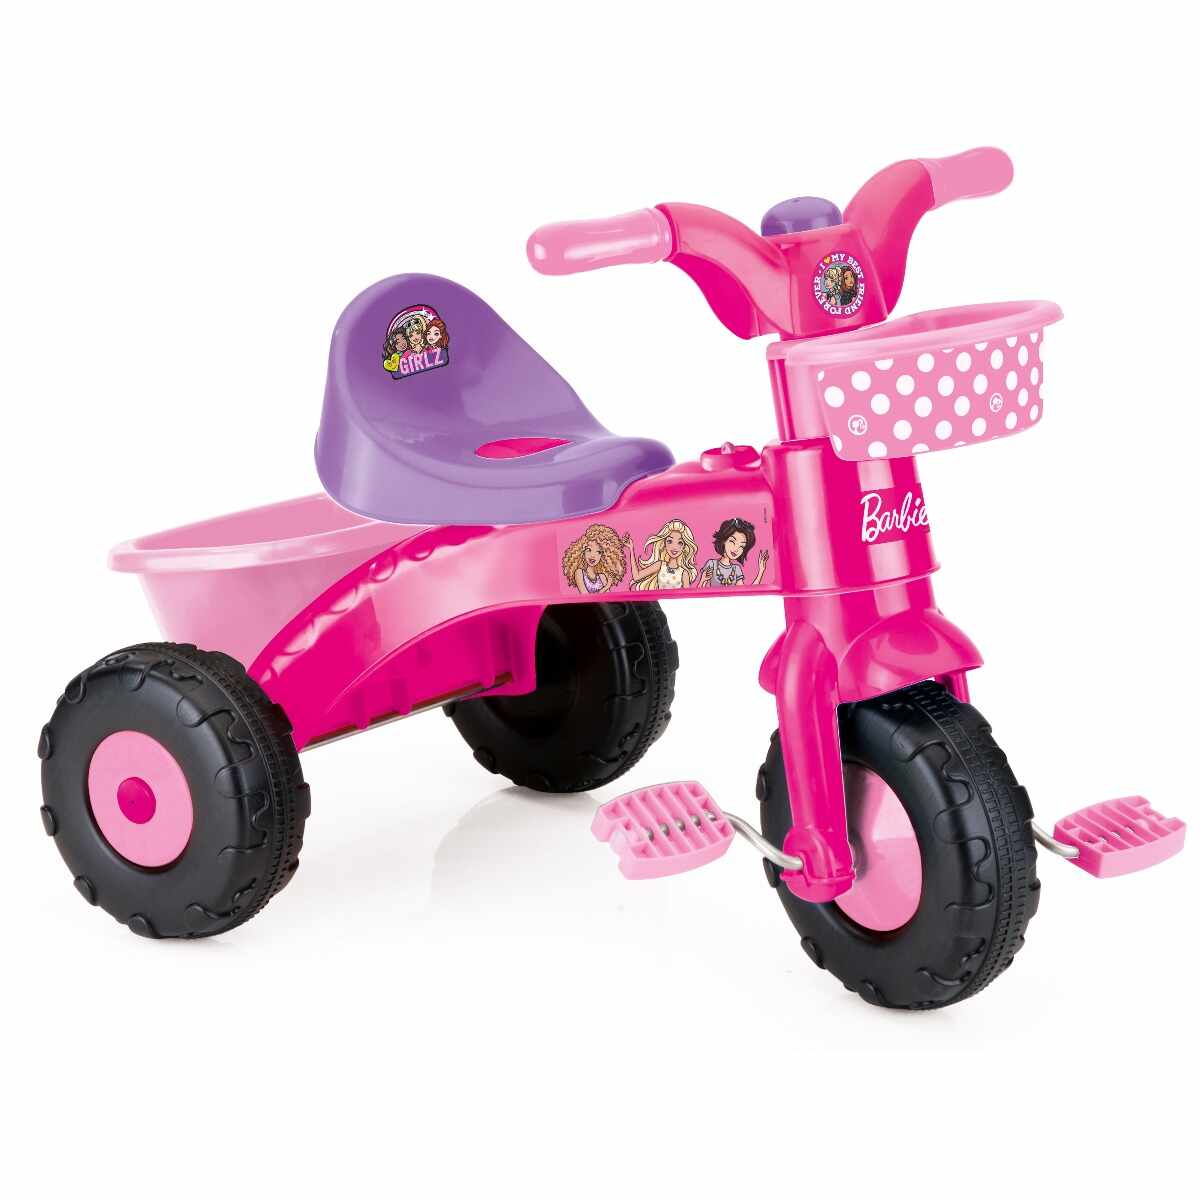 Tricicleta pentru copii Barbie Girlz